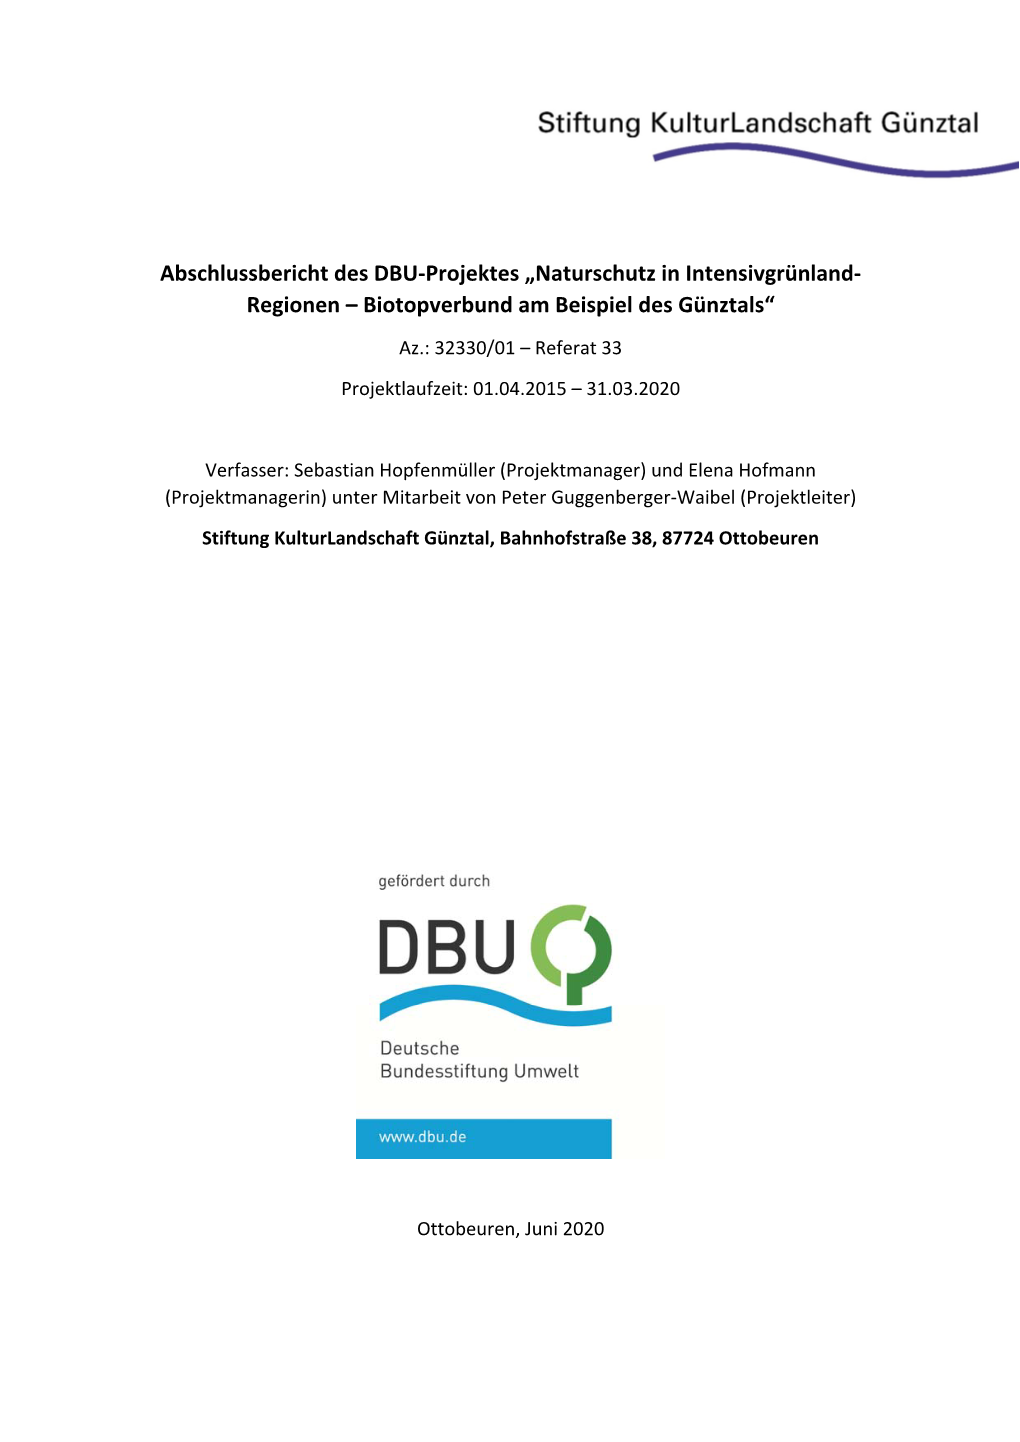 DBU-Abschlussbericht-AZ-32330 01